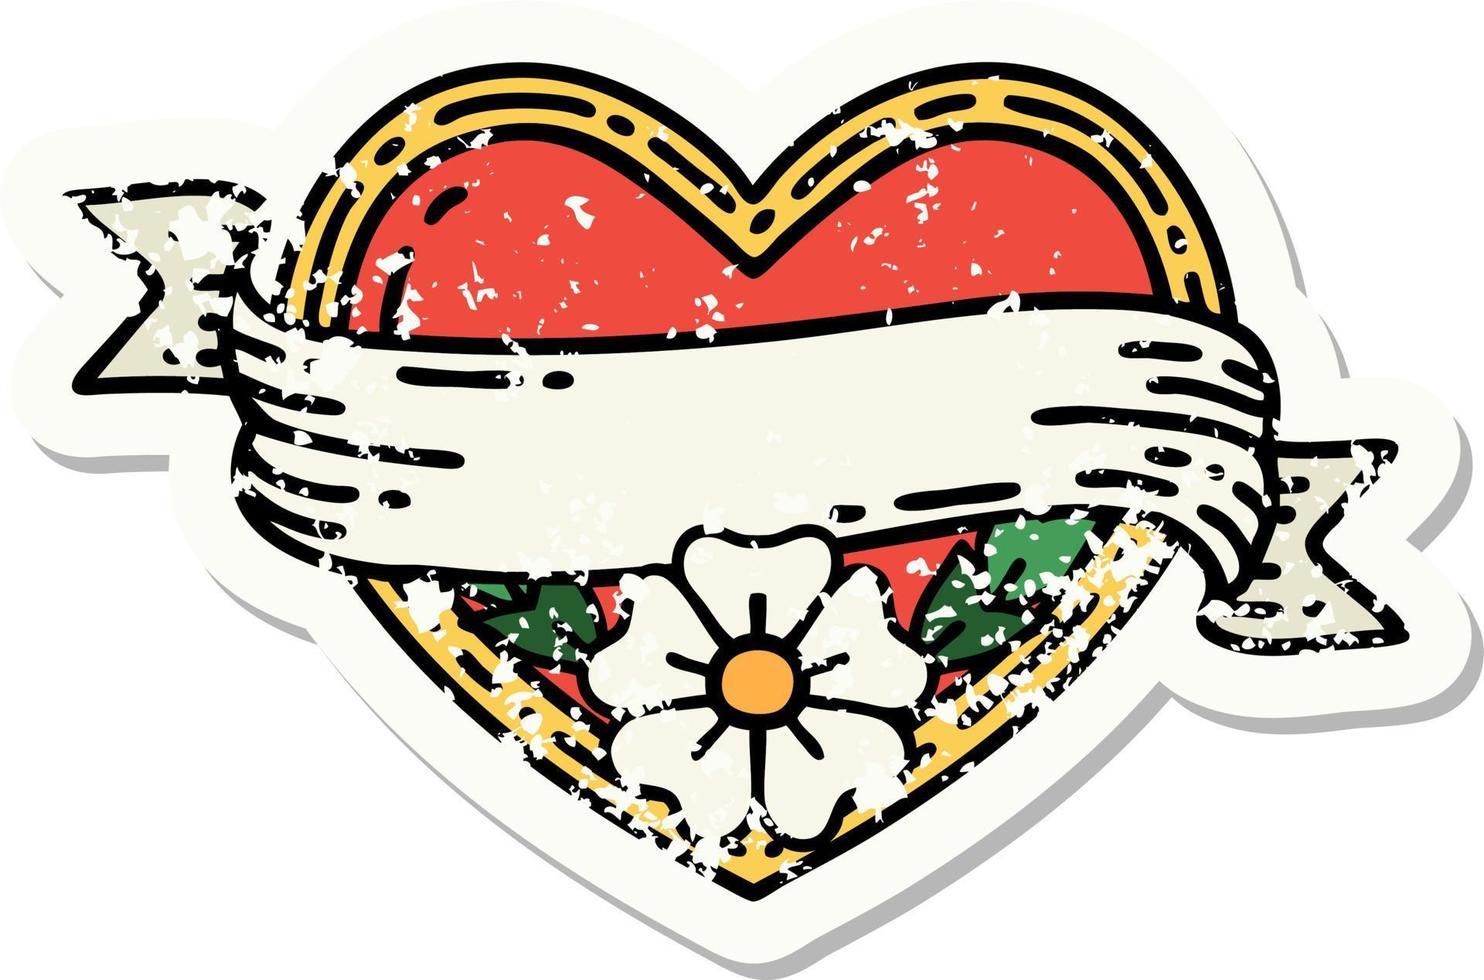 Distressed Sticker Tattoo im traditionellen Stil eines Herzens und eines Banners mit Blumen vektor